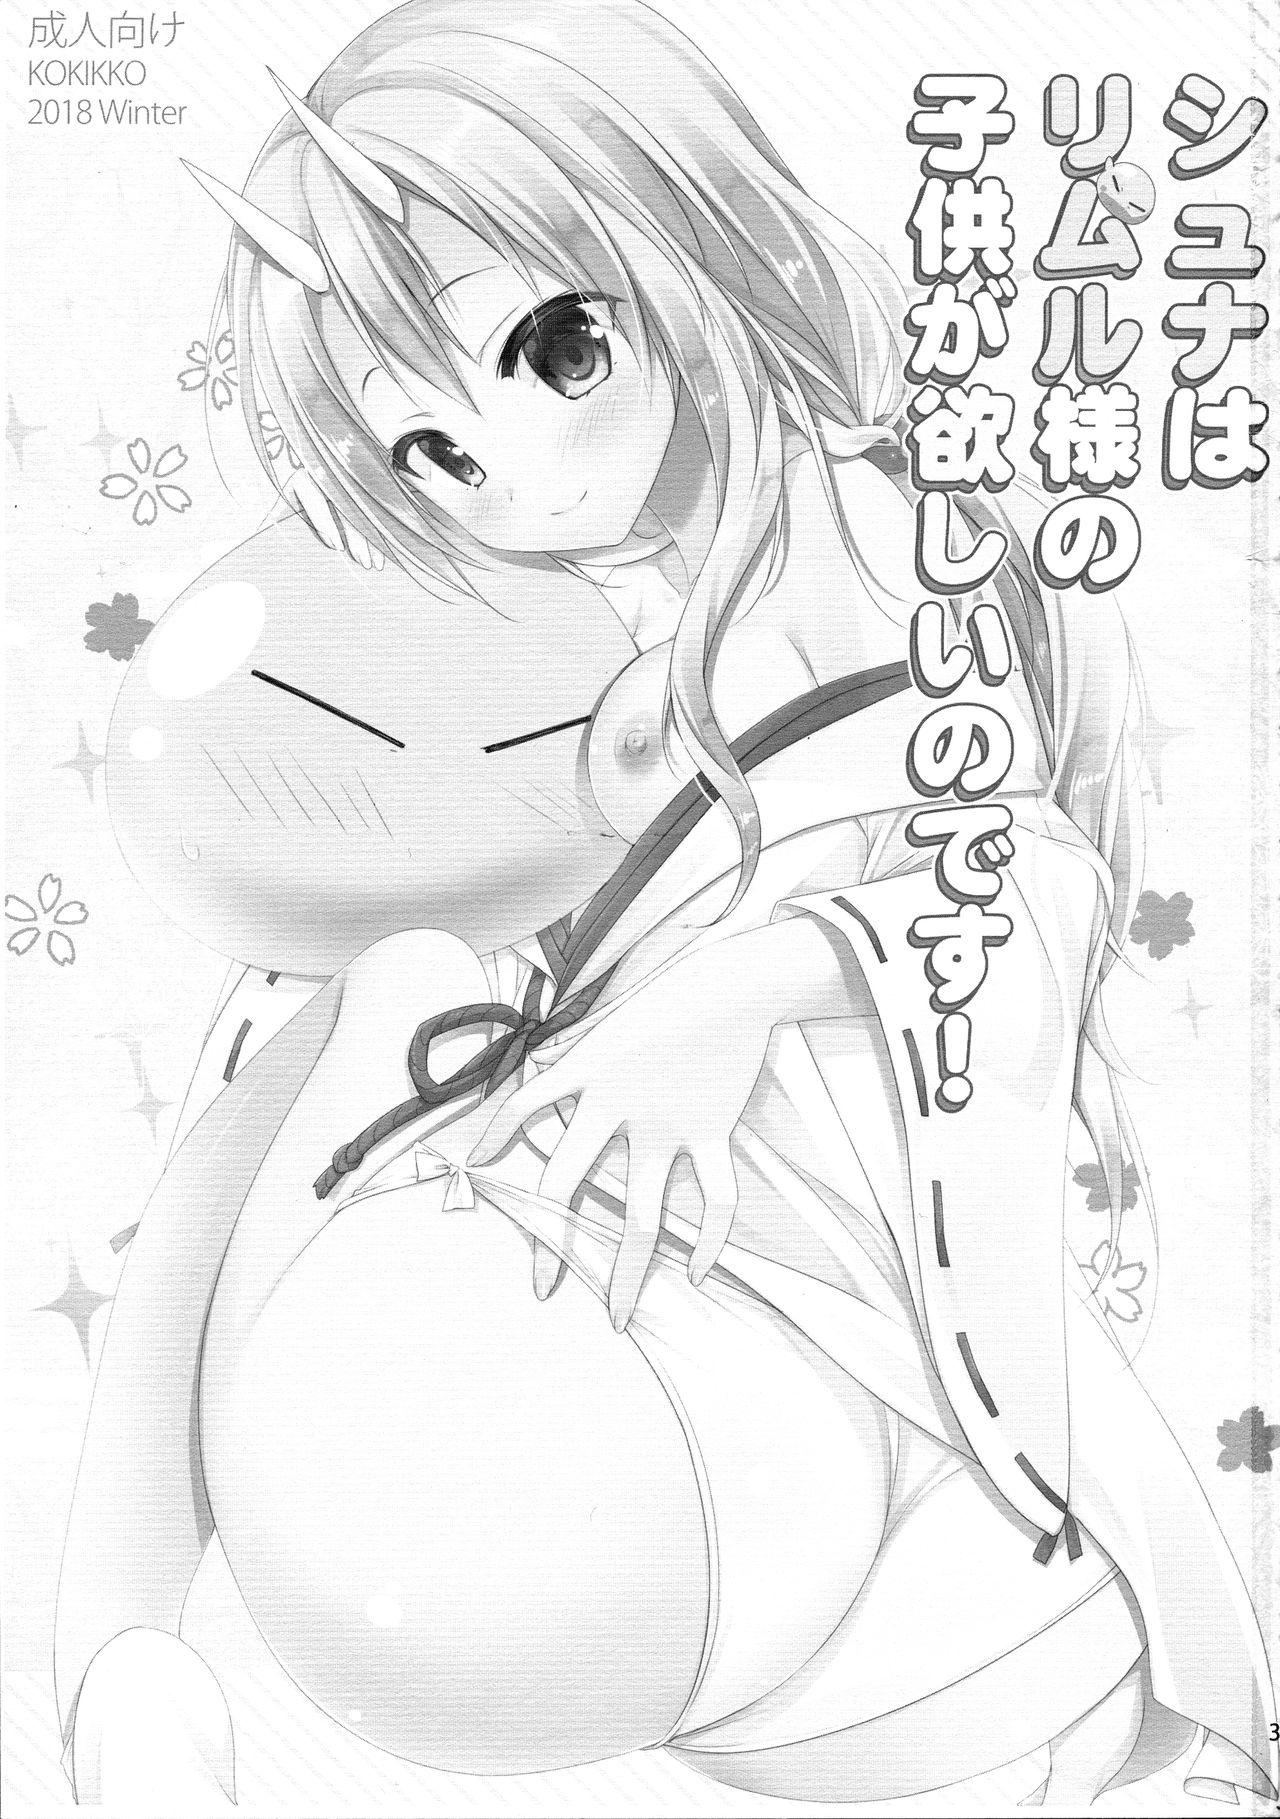 Shuna wa Rimuru-sama no Kodomo ga Hoshii no desu!  Shuna wants Rimuru-samas children! numero d'image 2